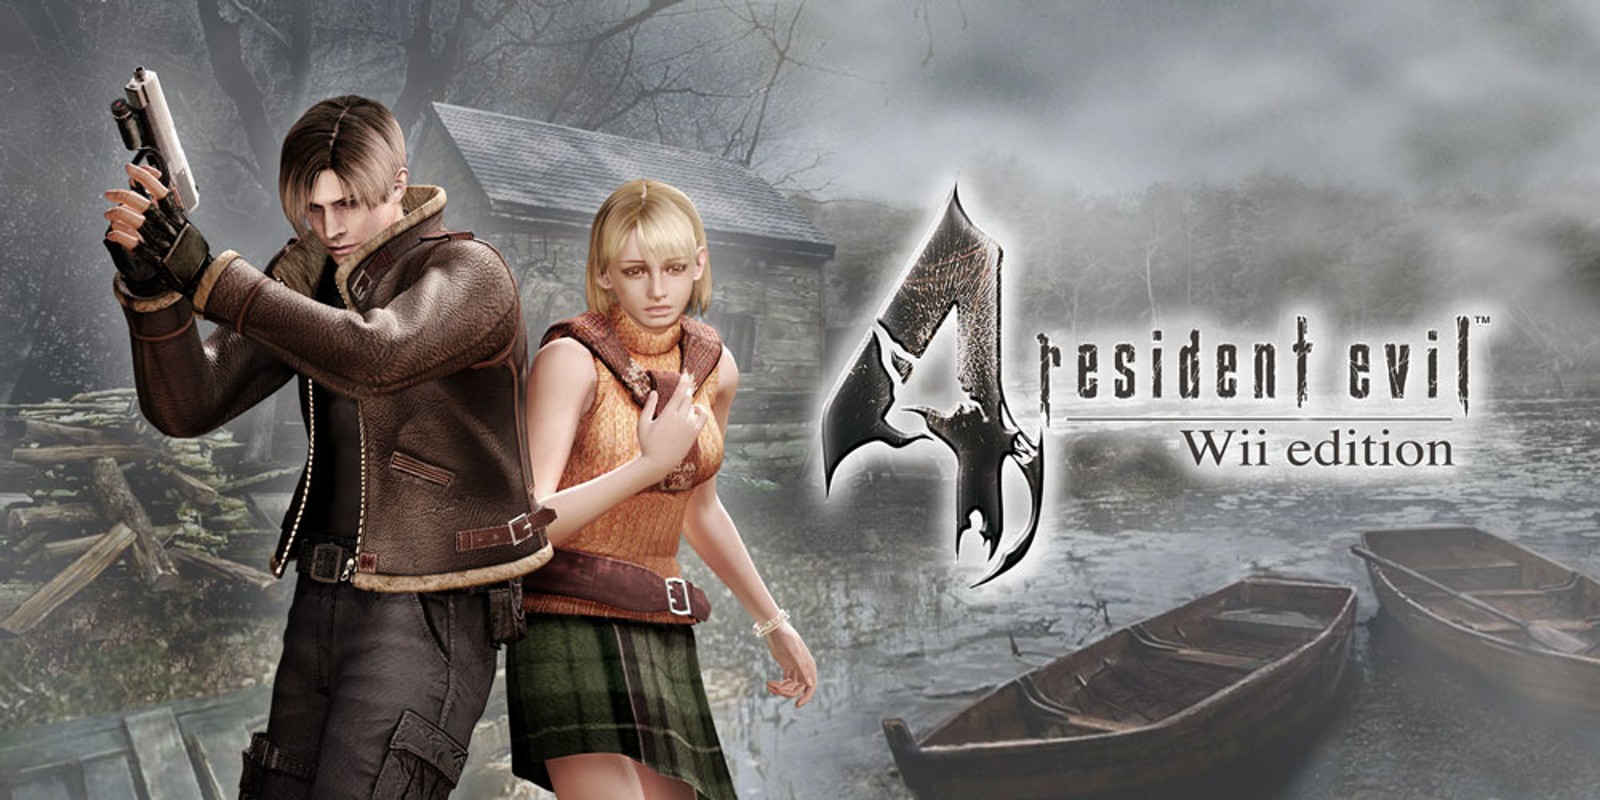 Прохождение игры Resident Evil 4 - Ultimate HD Edition # 20 (Русская версия игры) PC - Ver. HD Full.